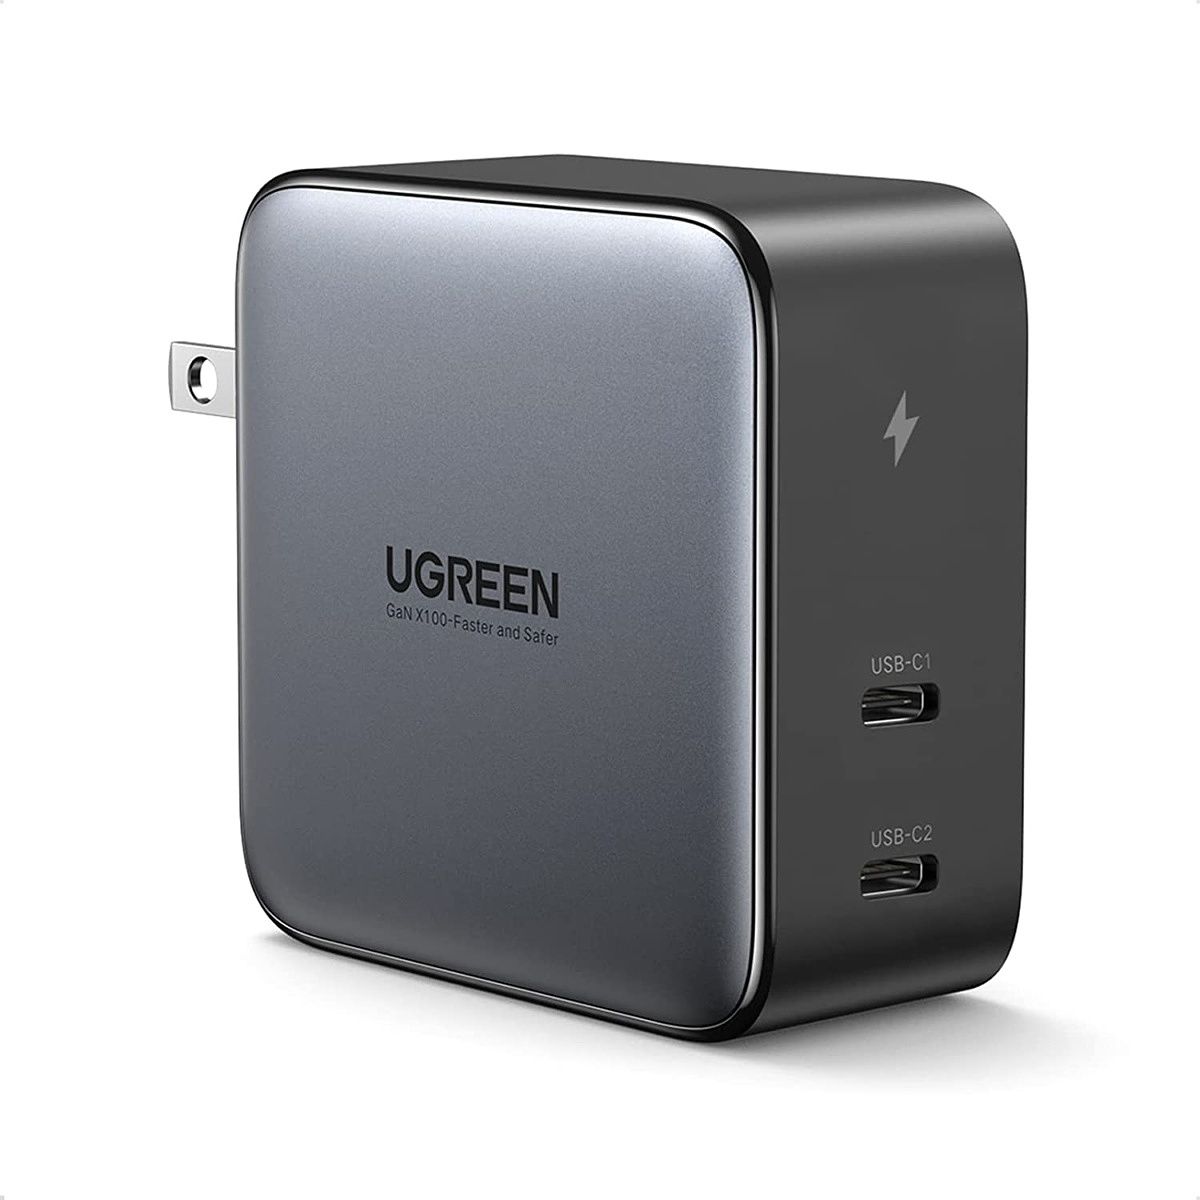 Зарядное устройство Ugreen 100 Вт поддерживает практически все основные протоколы быстрой зарядки, включая USB PD 3.0, QuickCharge 4.0+, USB PD PPS и Adaptive Fast Charging.  Кроме того, он имеет два порта Type-C, которые могут обеспечивать мощность до 100 Вт при подключении только одного порта.